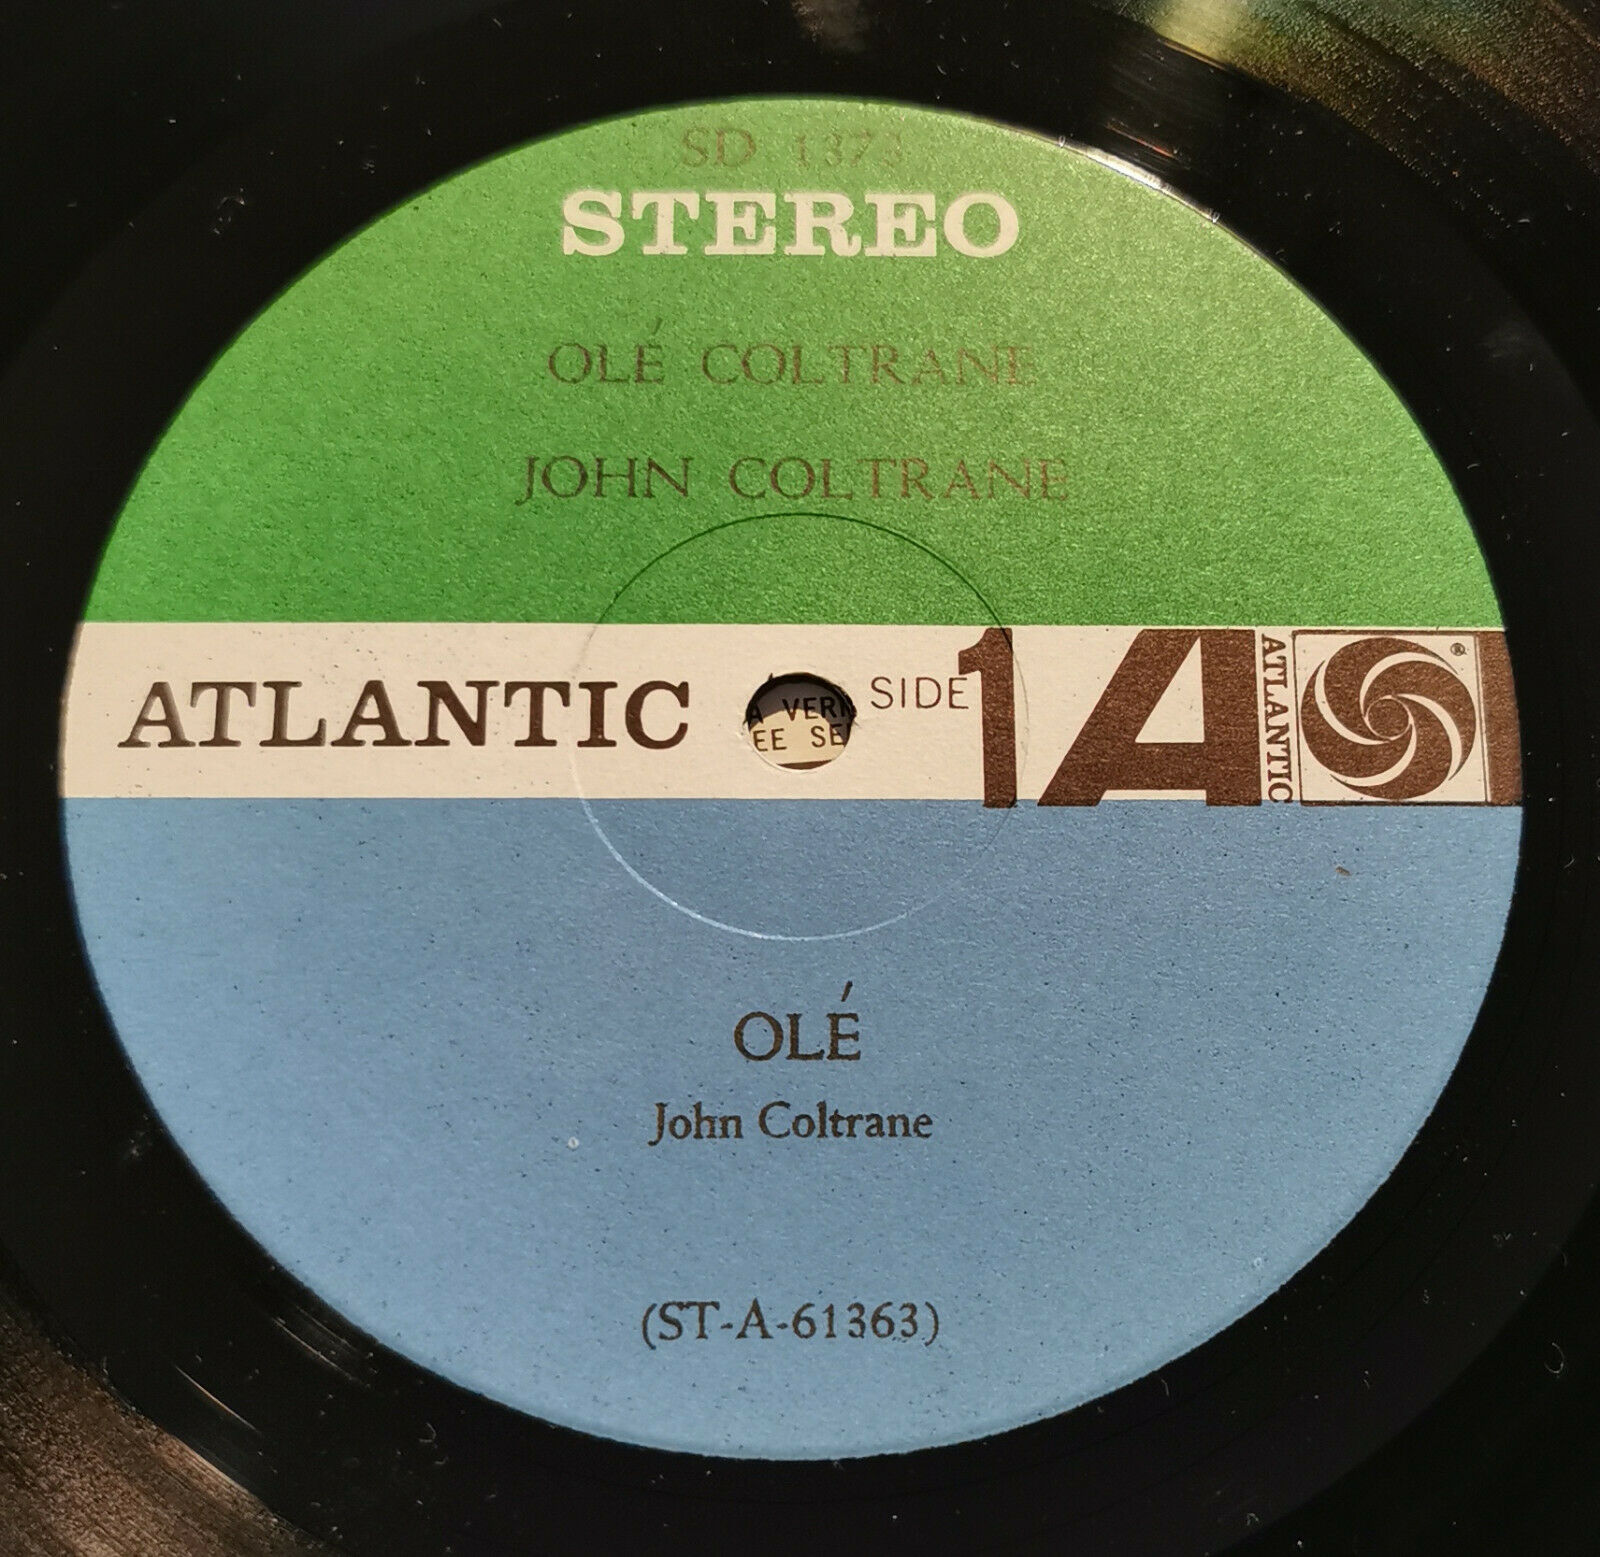 Pic 3 John Coltrane LP Olé Coltrane ATLANTIC SD 1373 1962 beautiful copy